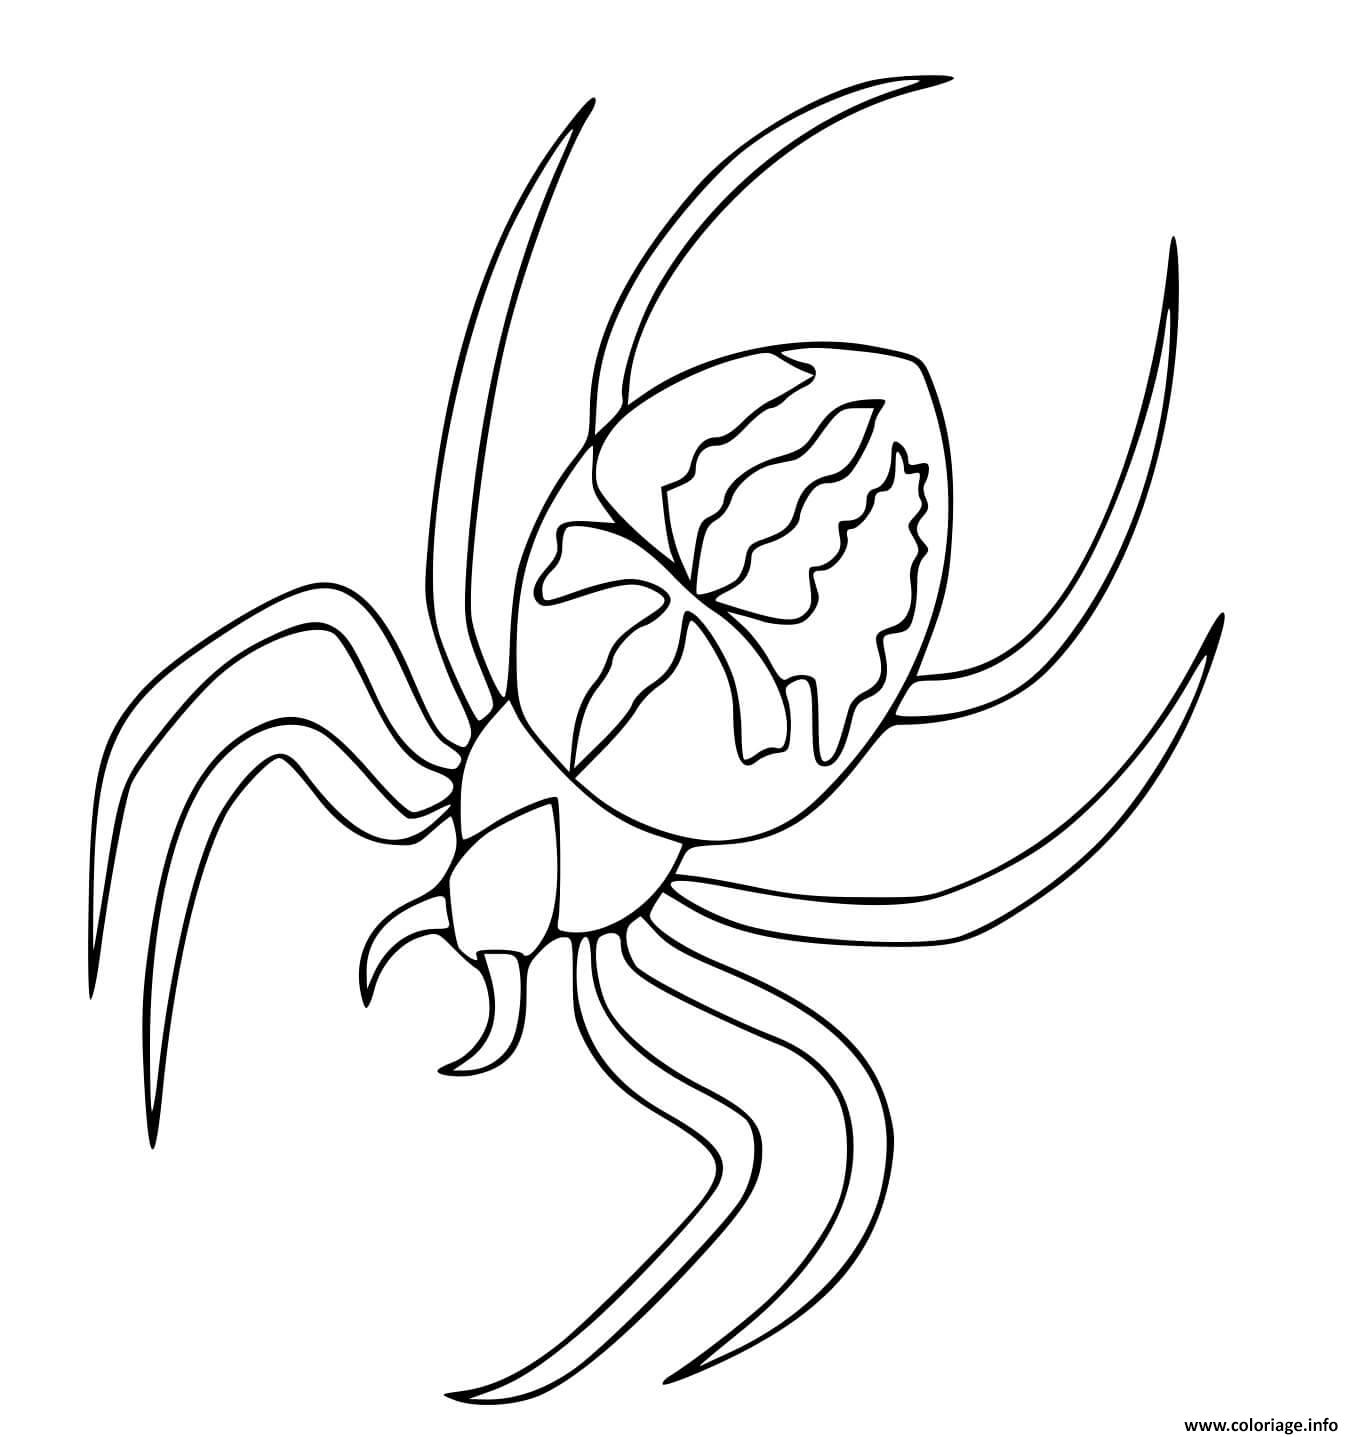 Coloriage Araignee Spiderman Dessin Araignee à imprimer